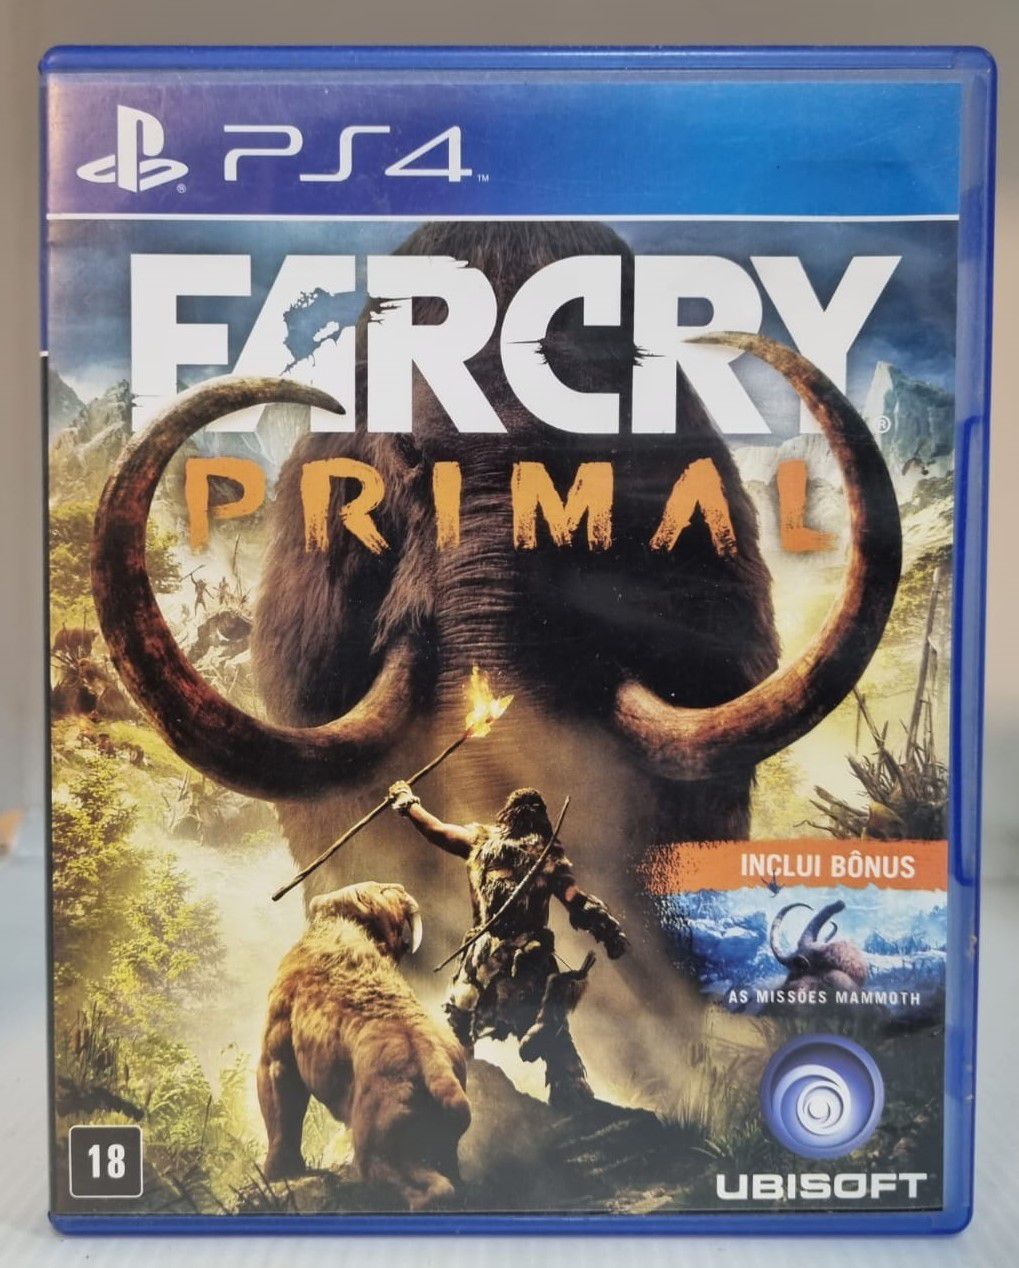 Far Cry 6 - Jogo PS5 Mídia Física